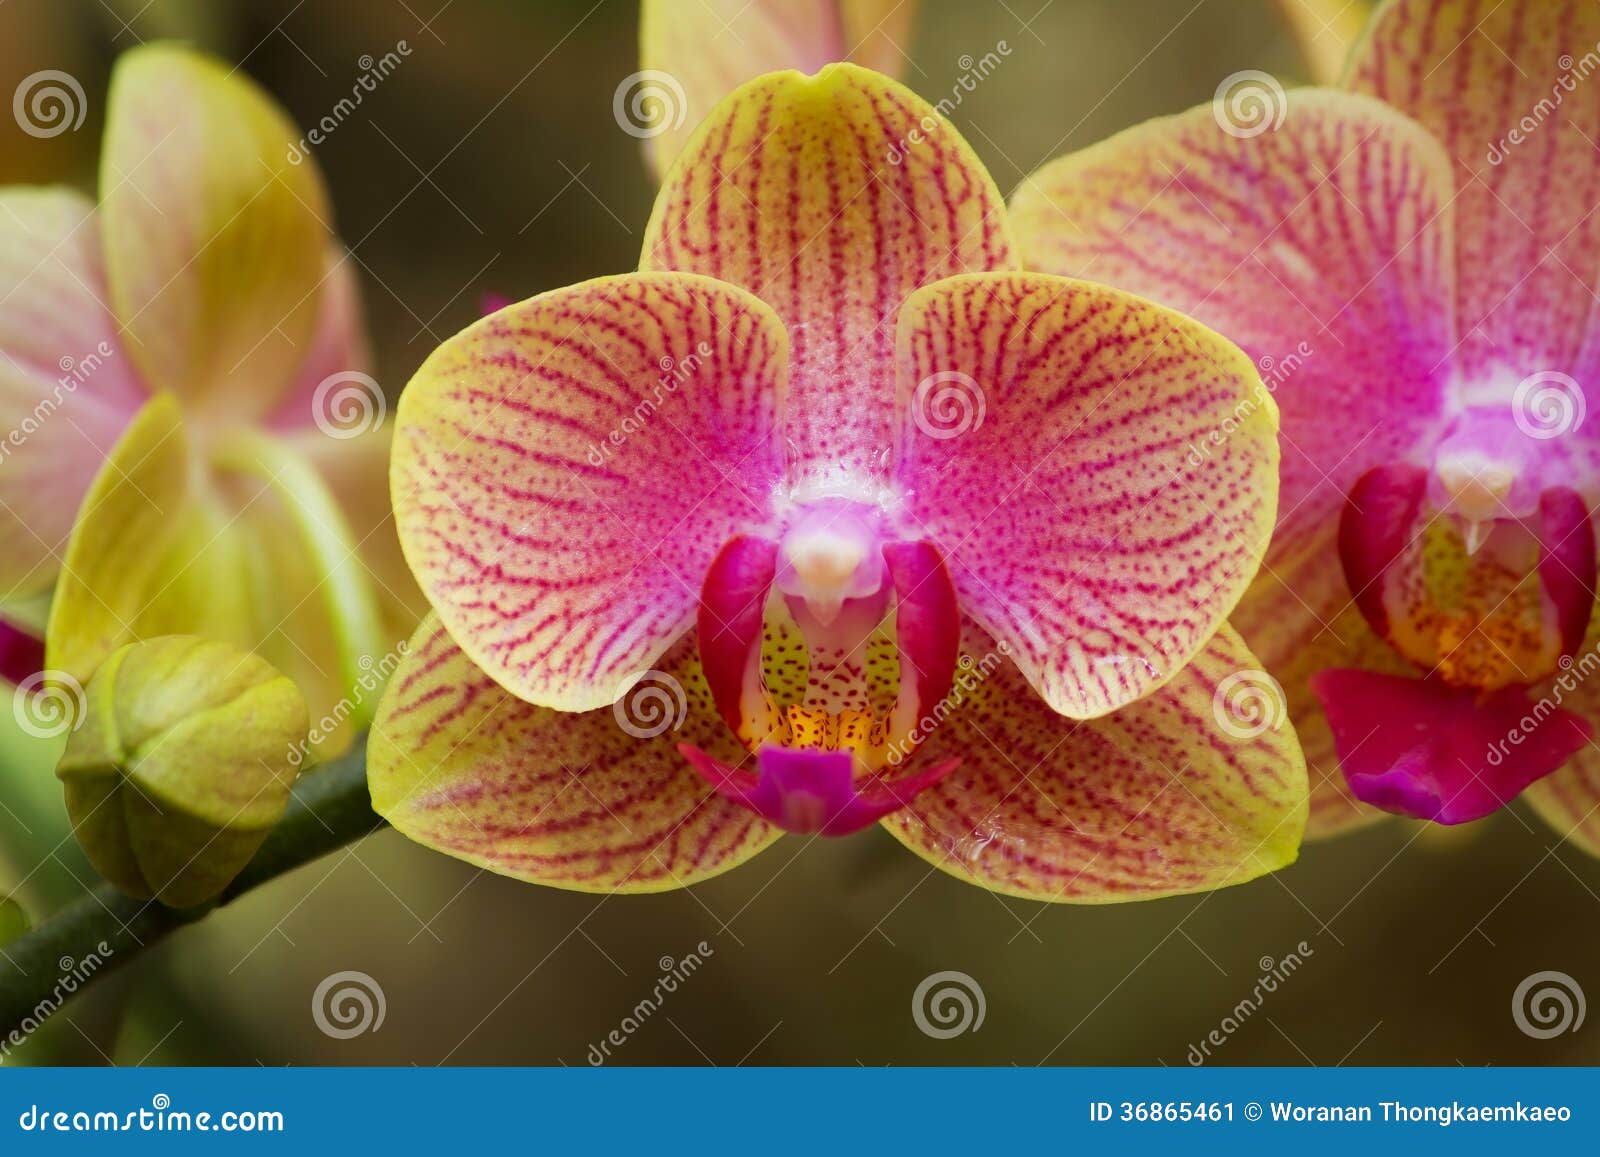 Orquídea colorida imagen de archivo. Imagen de cubo, flores - 36865461